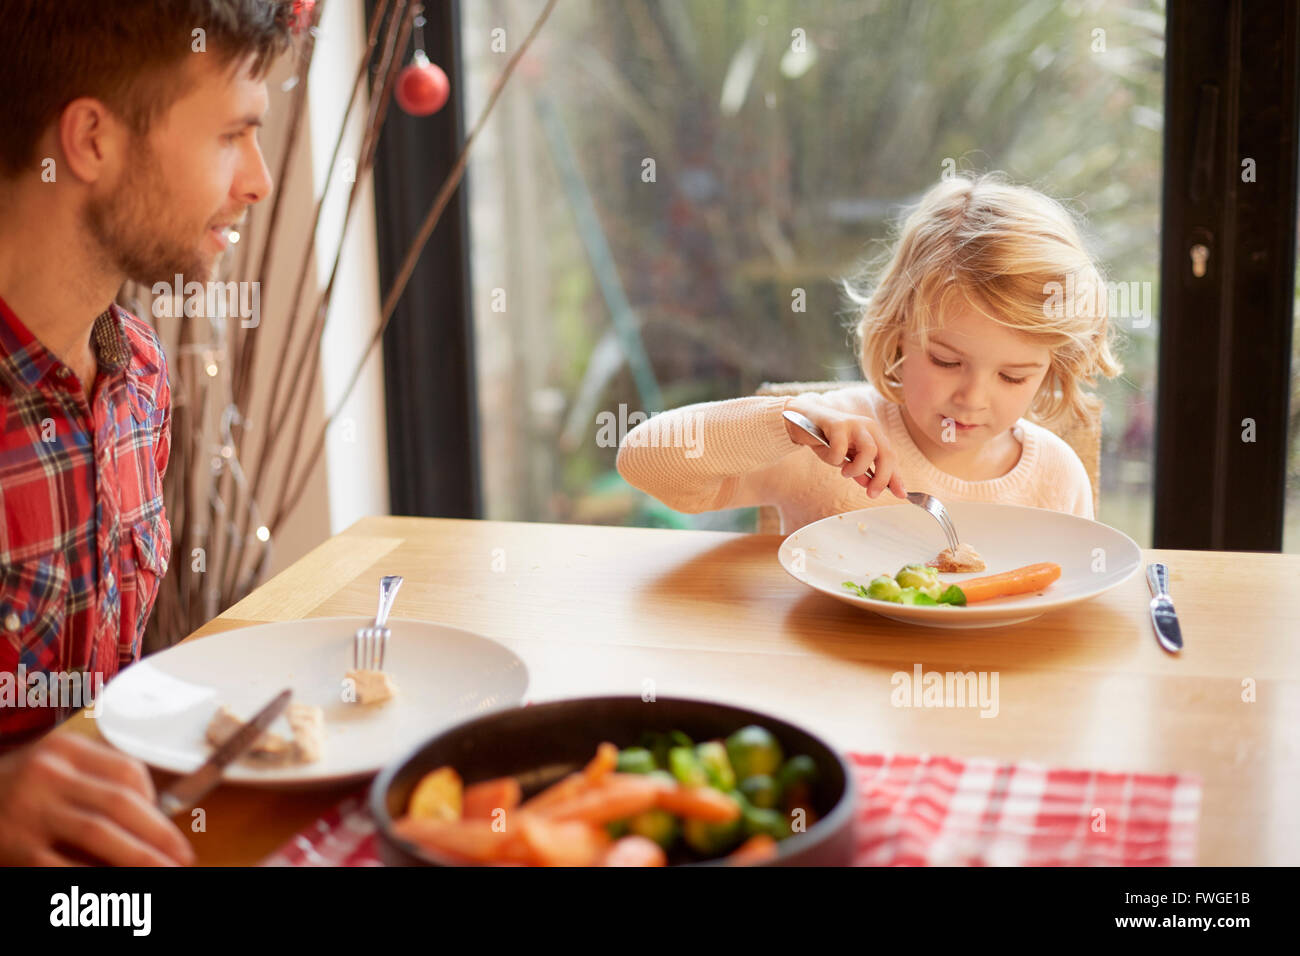 Un bambino e un uomo seduto a tavola a mangiare un pasto cucinato. Foto Stock